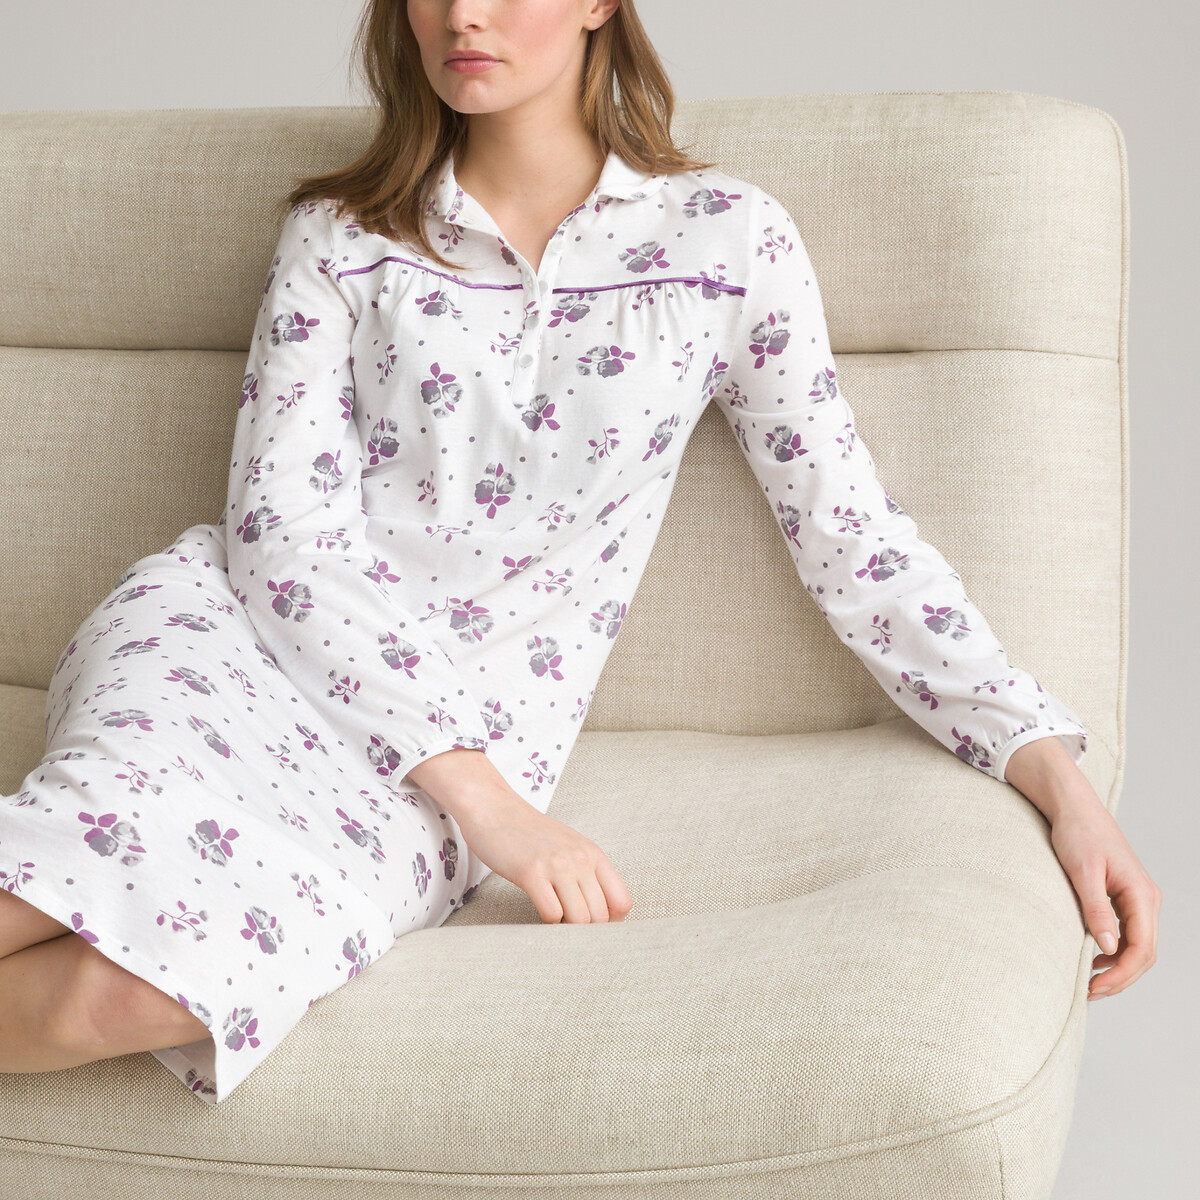 Camisón Mujer Verano Camisones de Algodon Manga Corta Ropa de Dormir Imprimiendo Pijamas Camisónes Elegante Grande Talla